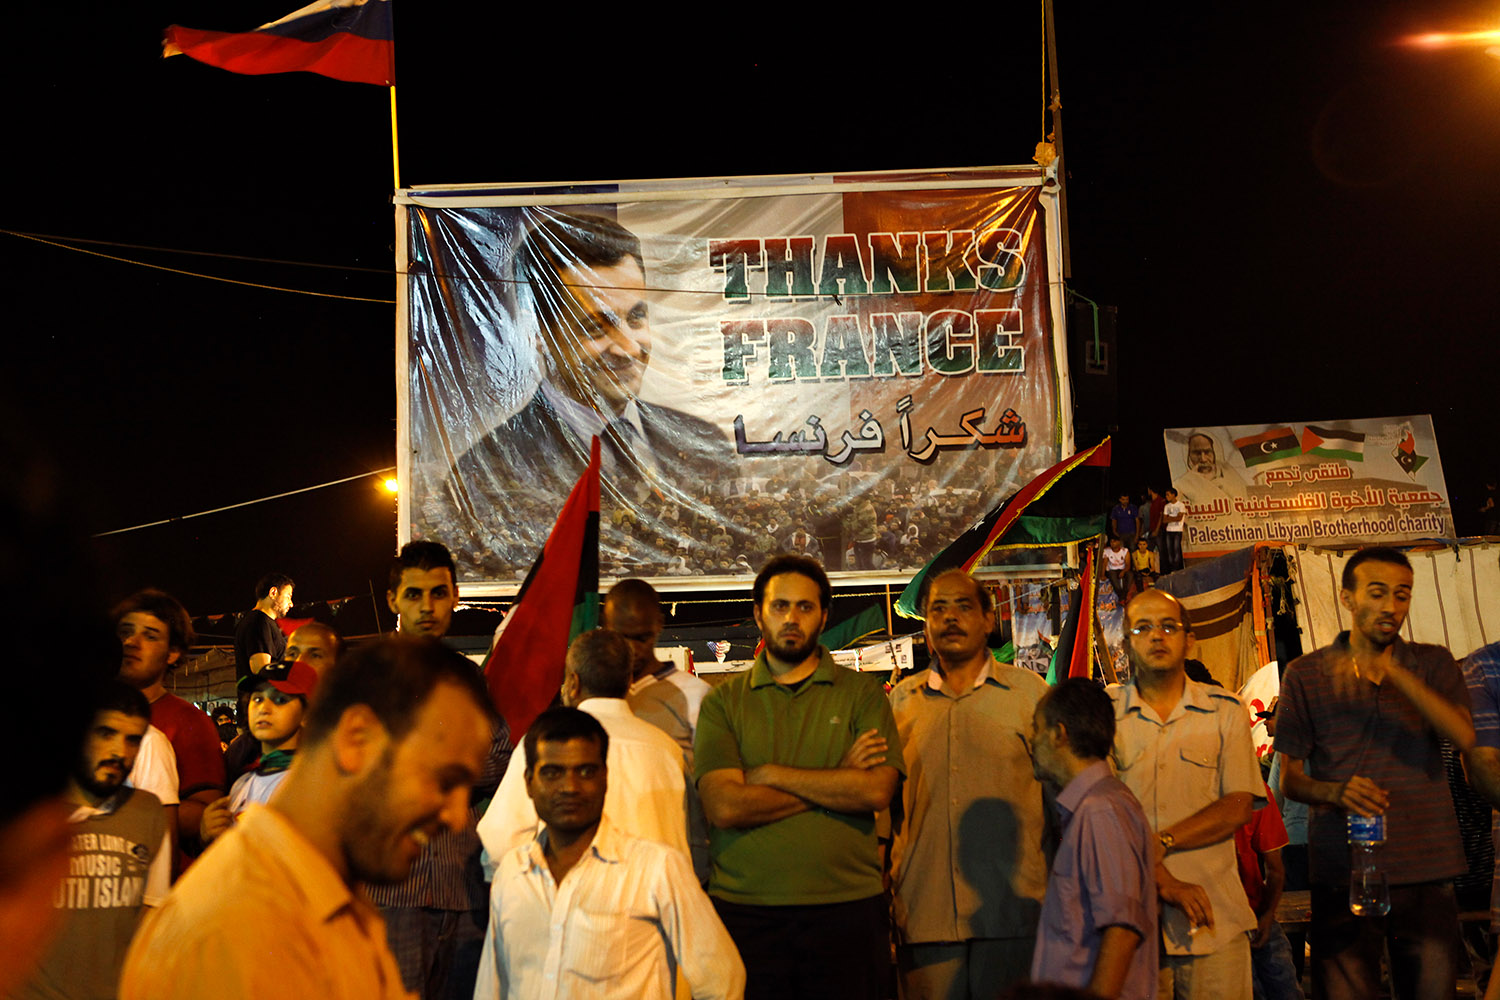 Les rebelles de Benghazi remercient avec une pancarte la France et son Président, Nicolas Sarkozy.